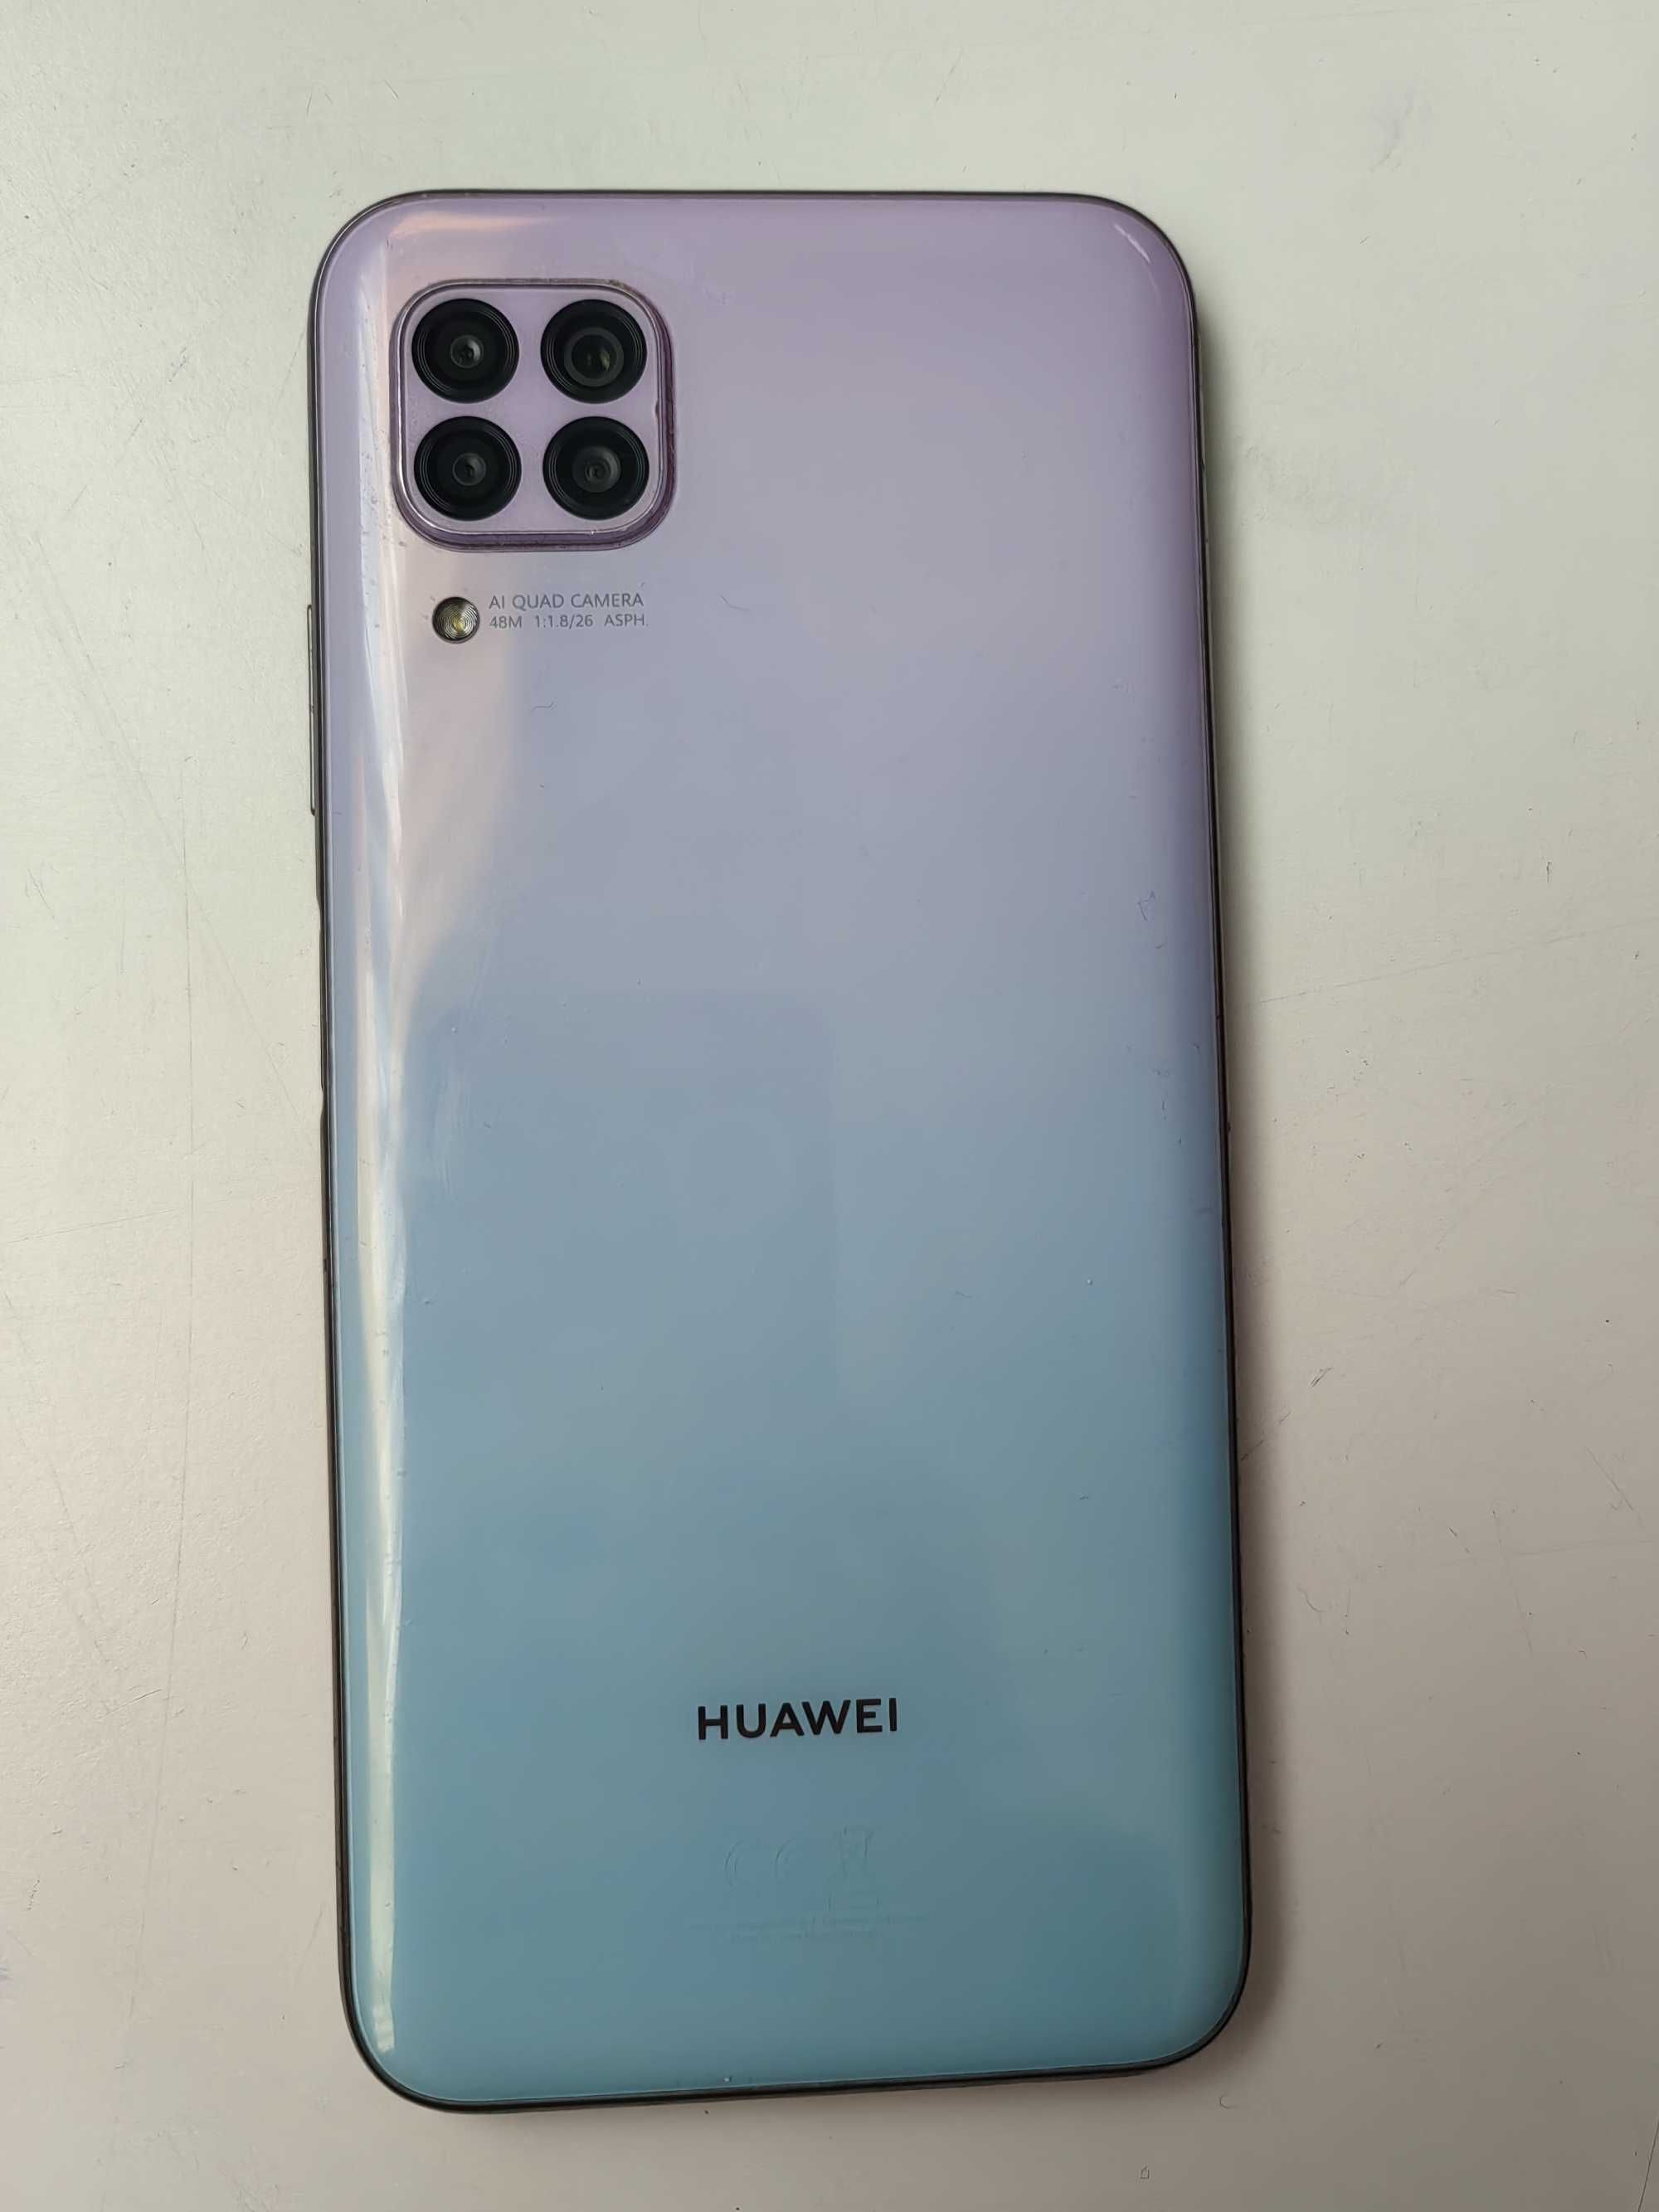 Huawei P40 lite dual sim